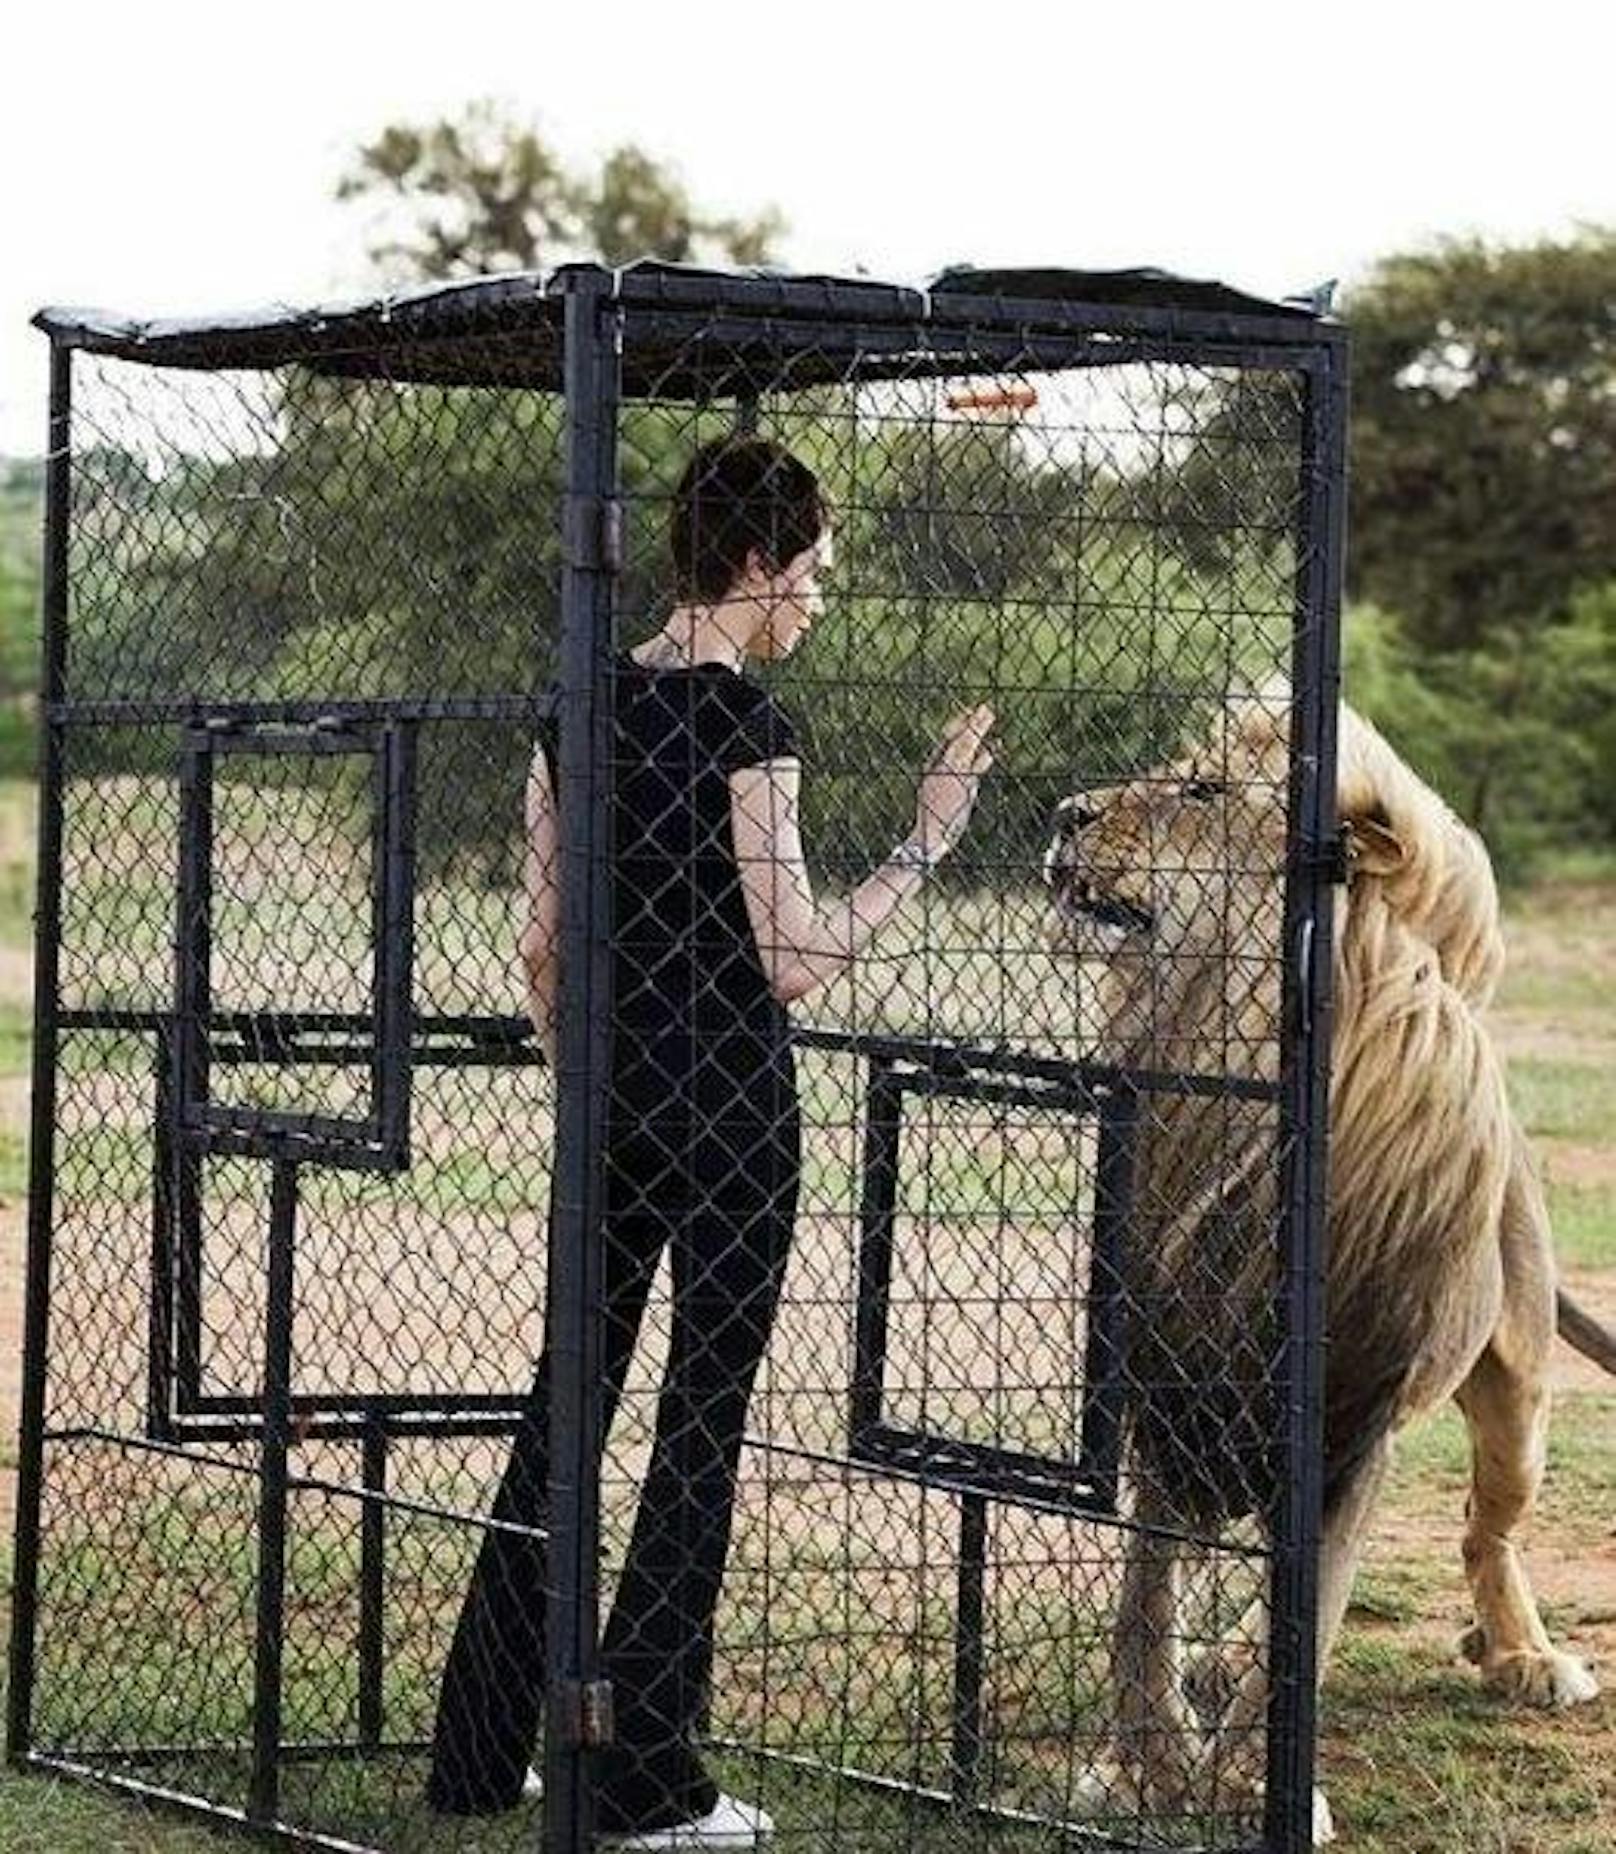 11.12.2017: Schauspielerin Cara Delevingne durfte mit einem Löwen zusammen arbeiten.